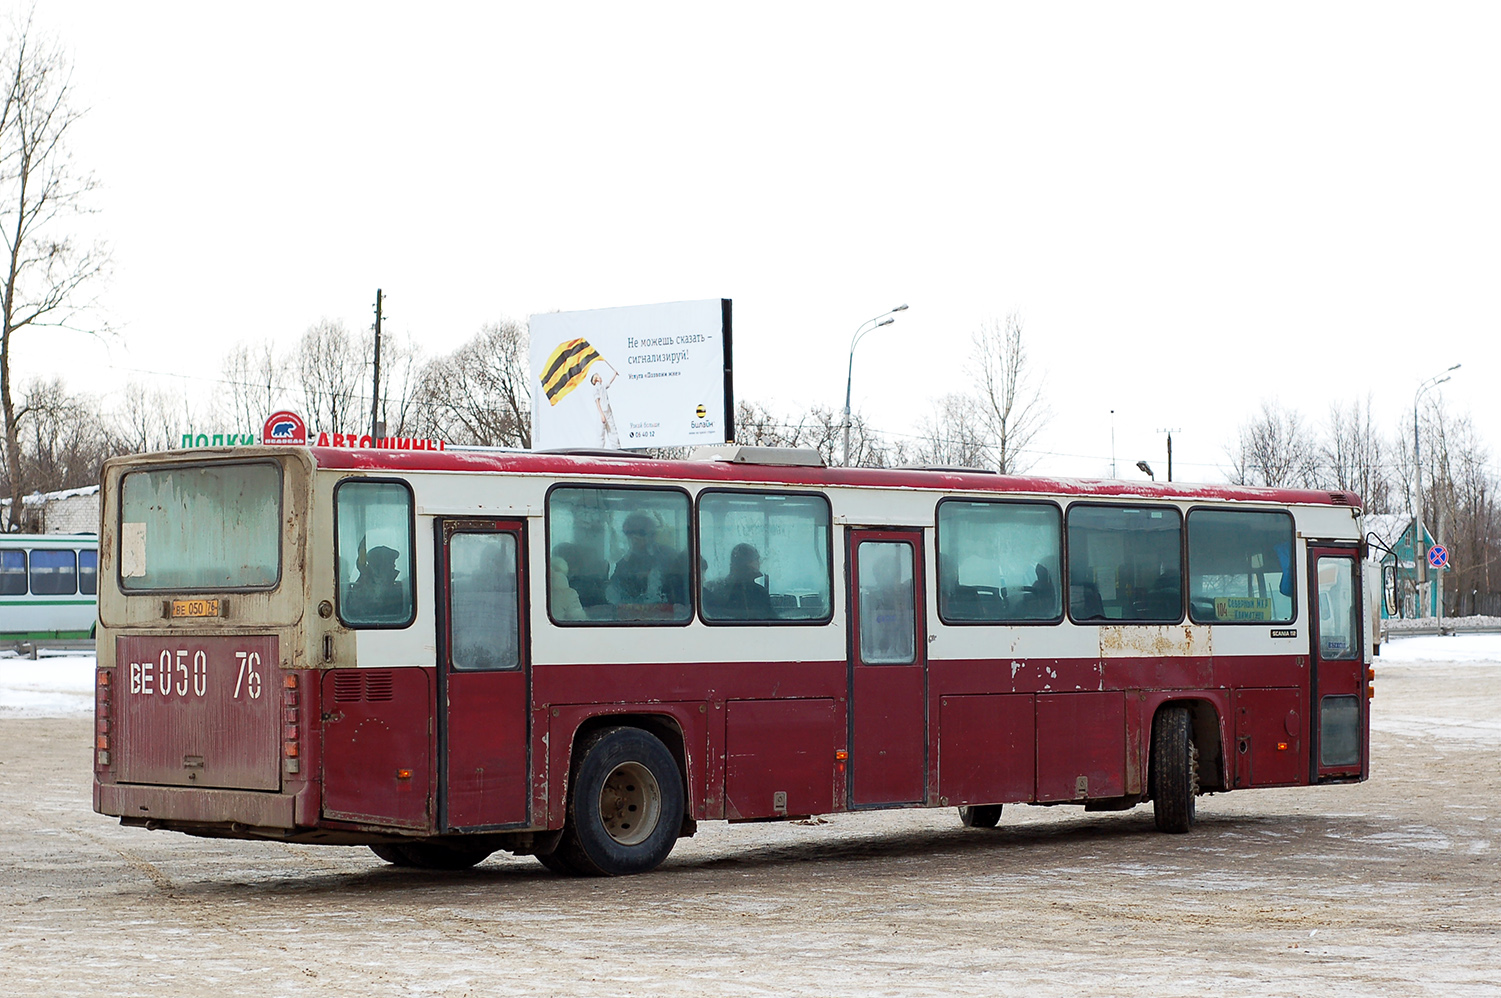 Ярославская область, Scania CR112 № ВЕ 050 76